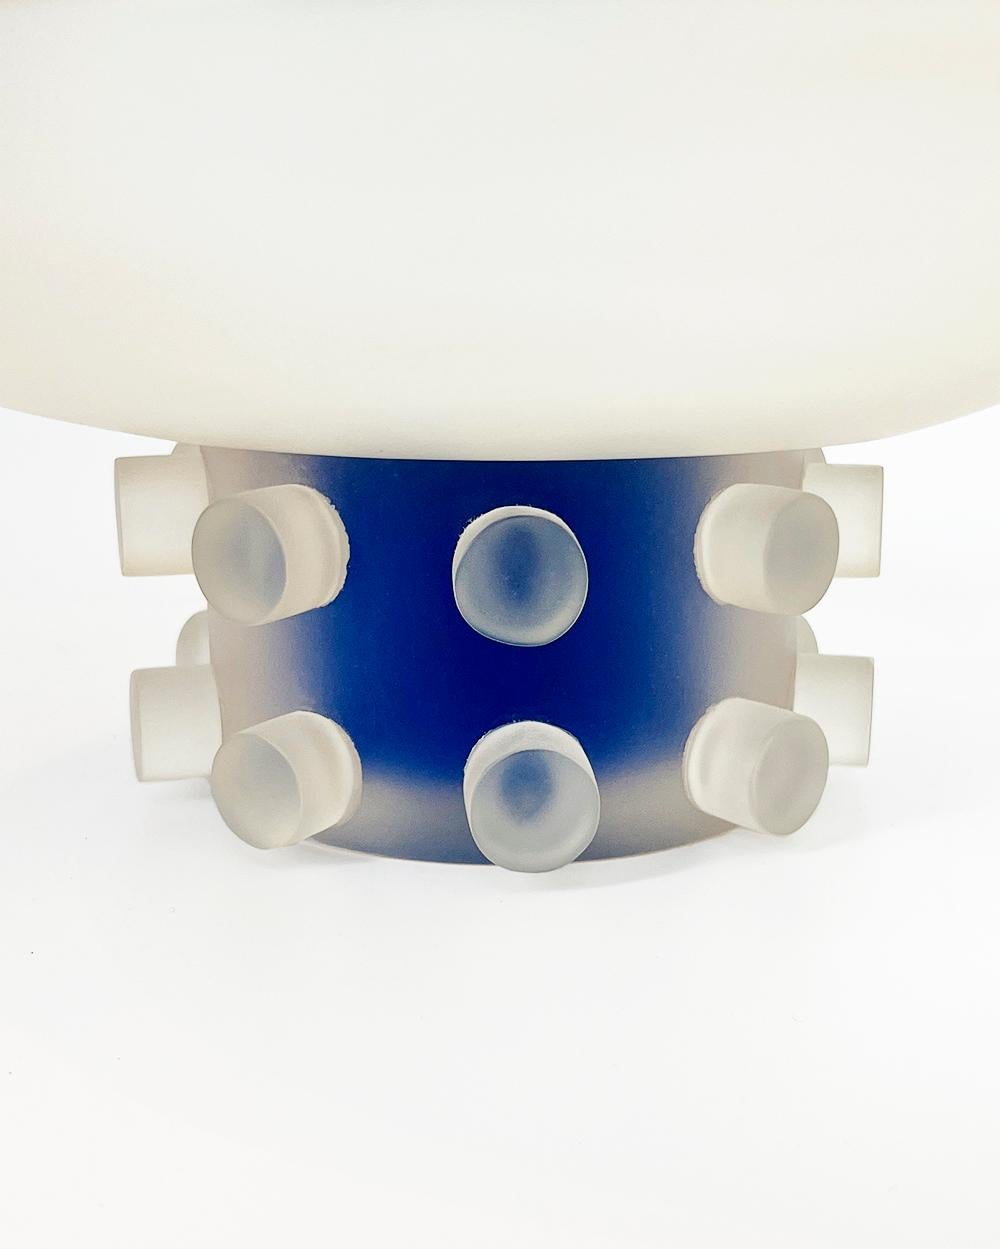 Un bol unique pour votre table basse
Ce bol à piédestal en résine Clear and Blue de Xilitla apporte une touche unique à votre intérieur. Fabriqué avec de la résine transparente et une teinte bleue saisissante, il crée un look moderne et industriel